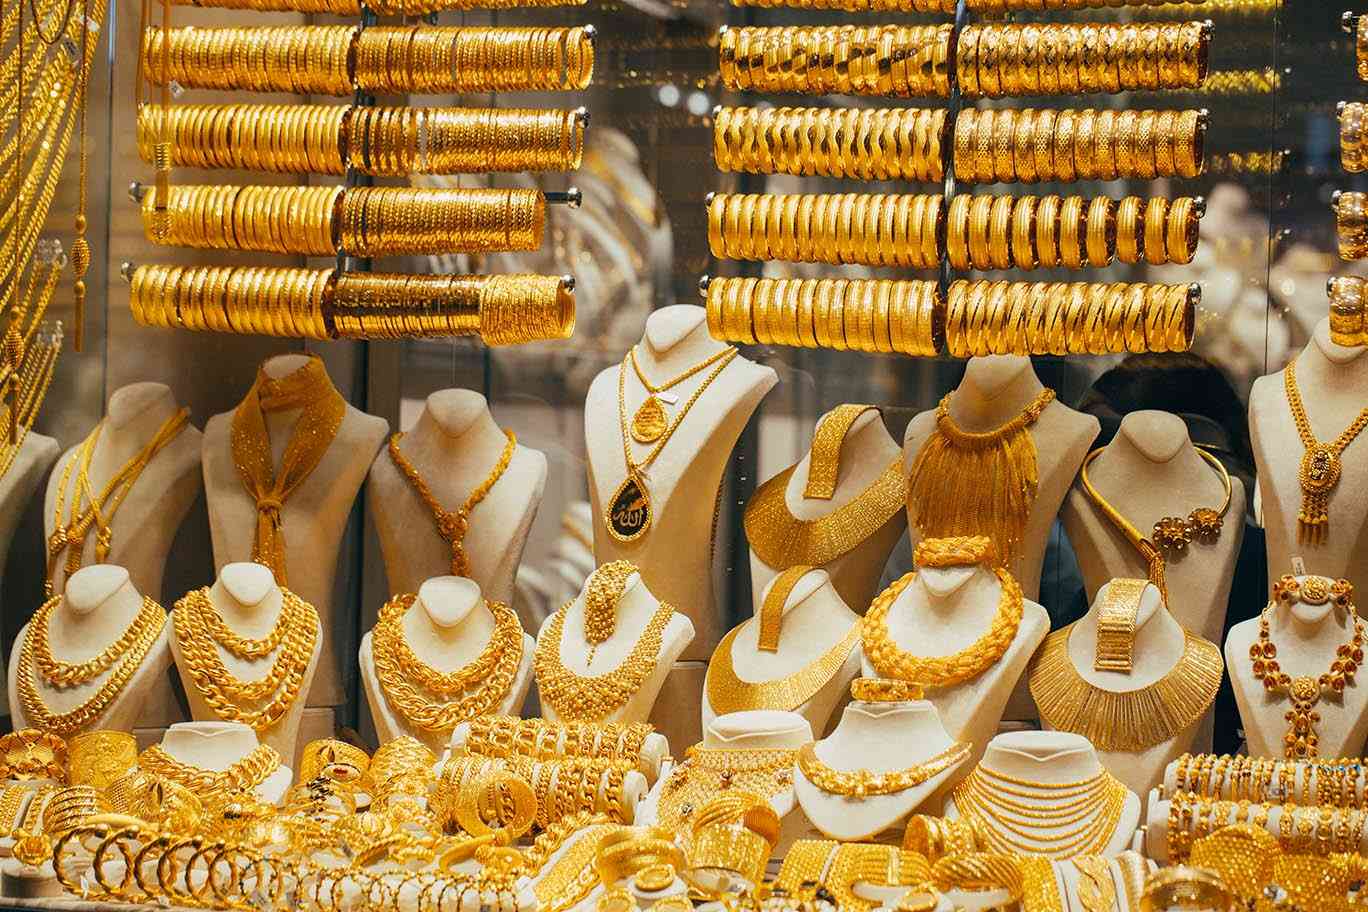 سعر الذهب اليوم للبيع والشراء بمحلات الصاغة في مصر والسعودية الأربعاء 12-5-2021